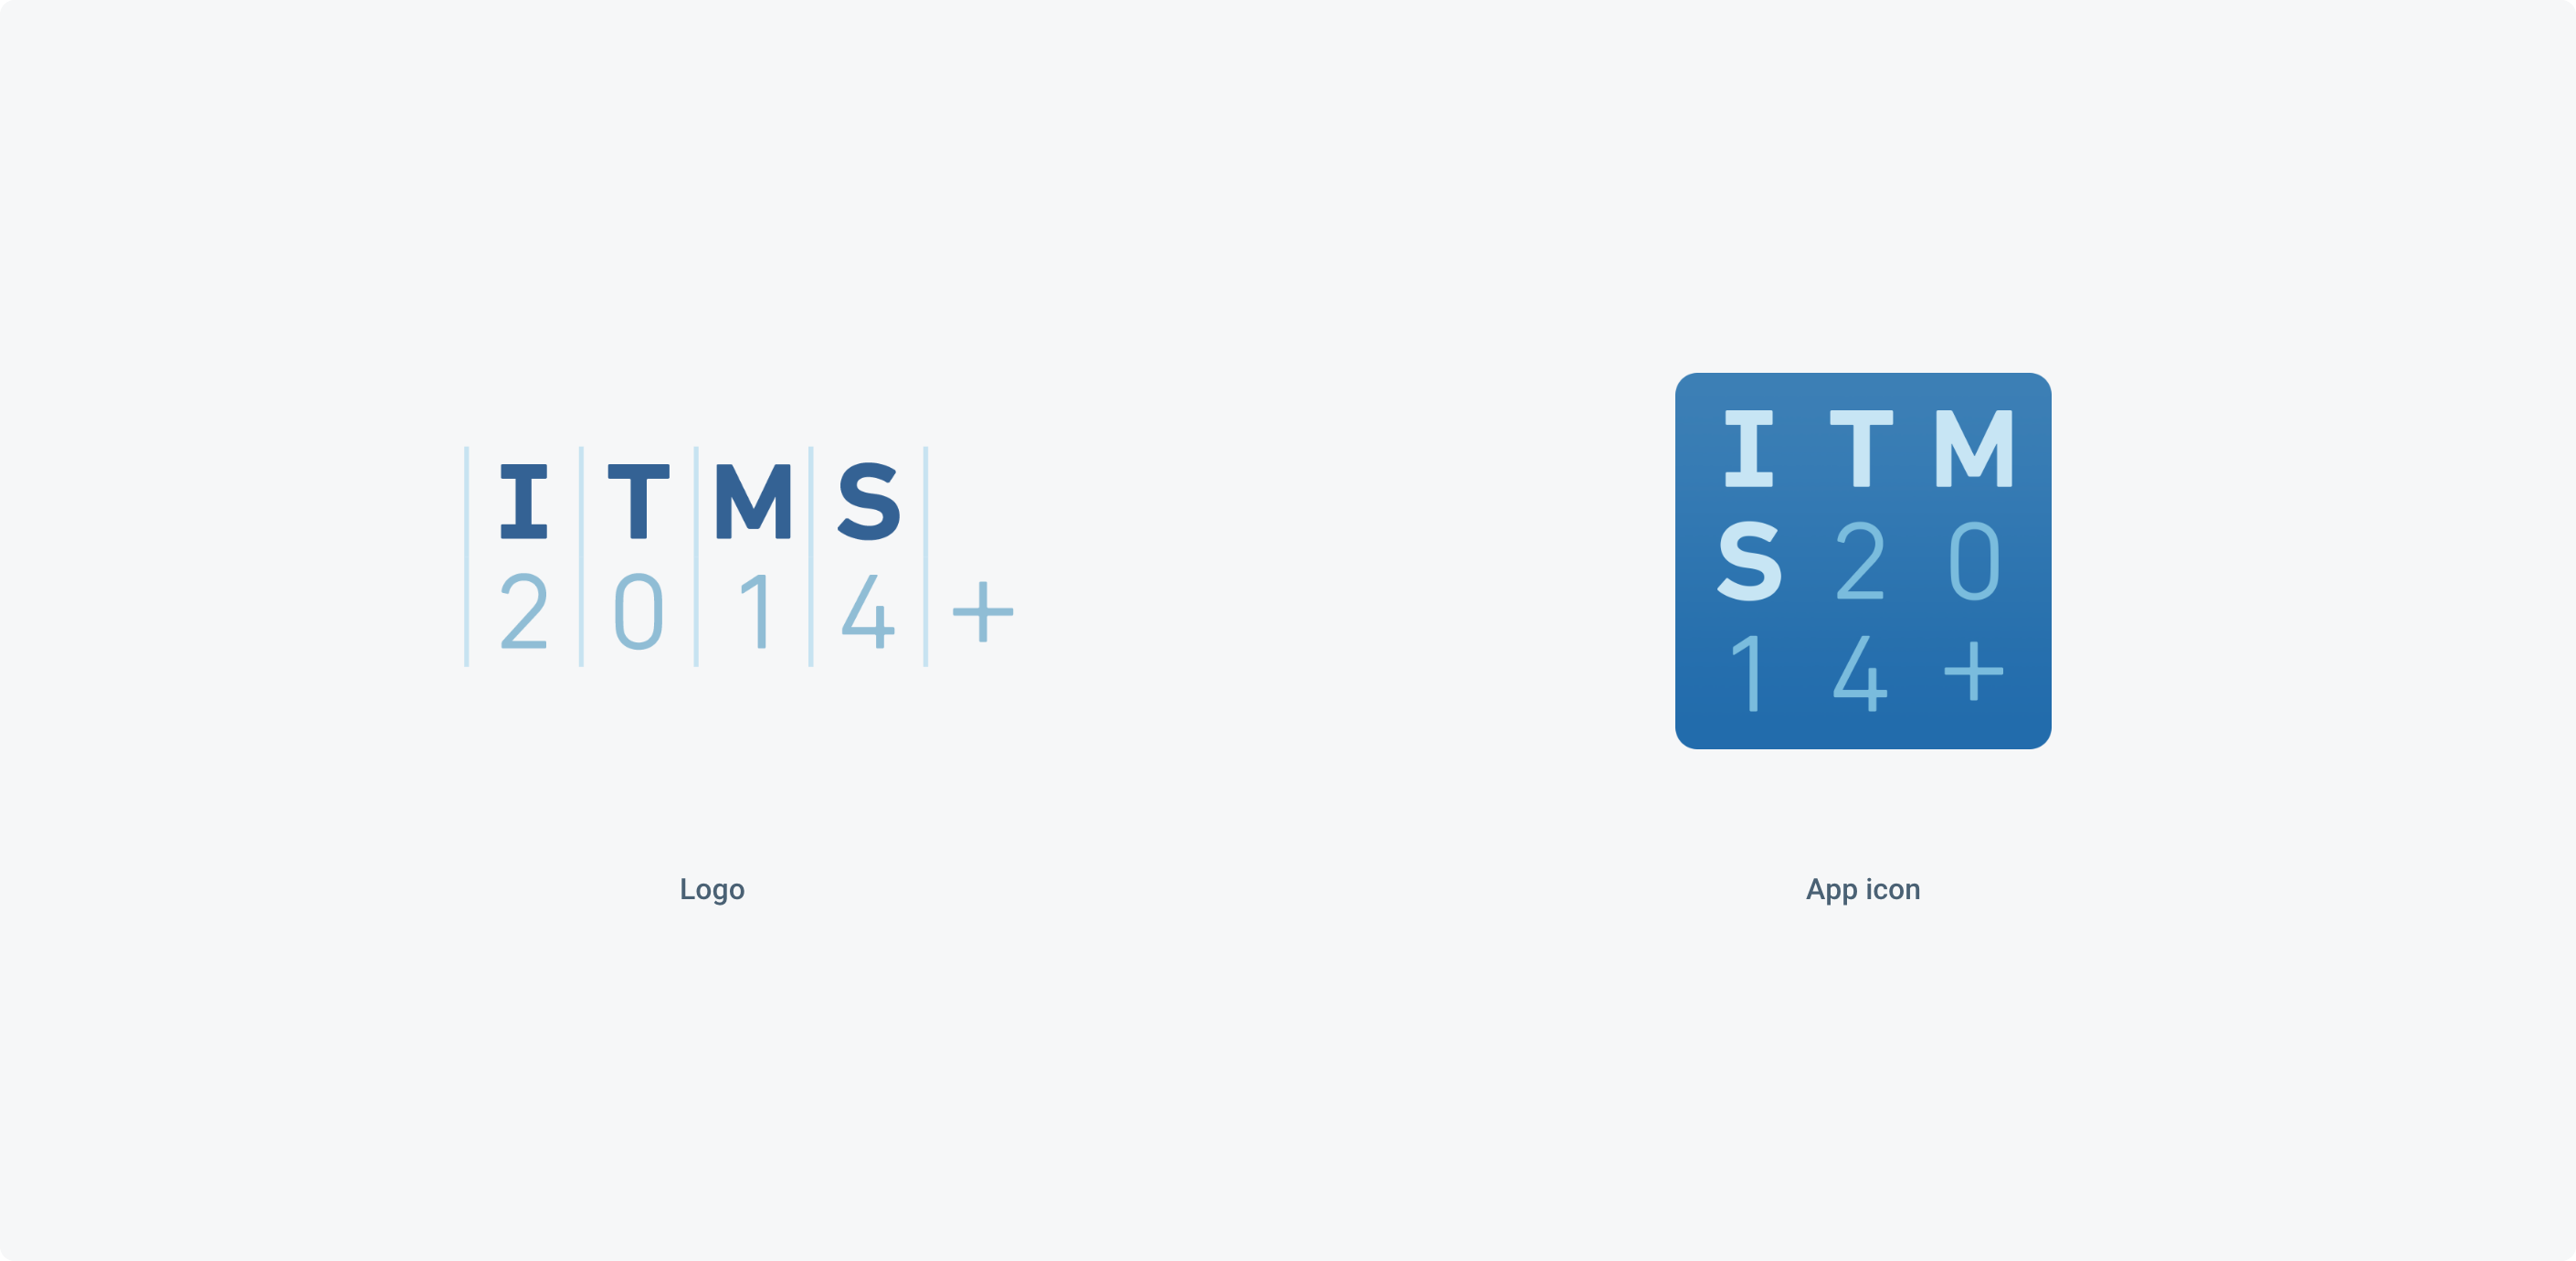 studio 001 itms 2014 logo 01 2x